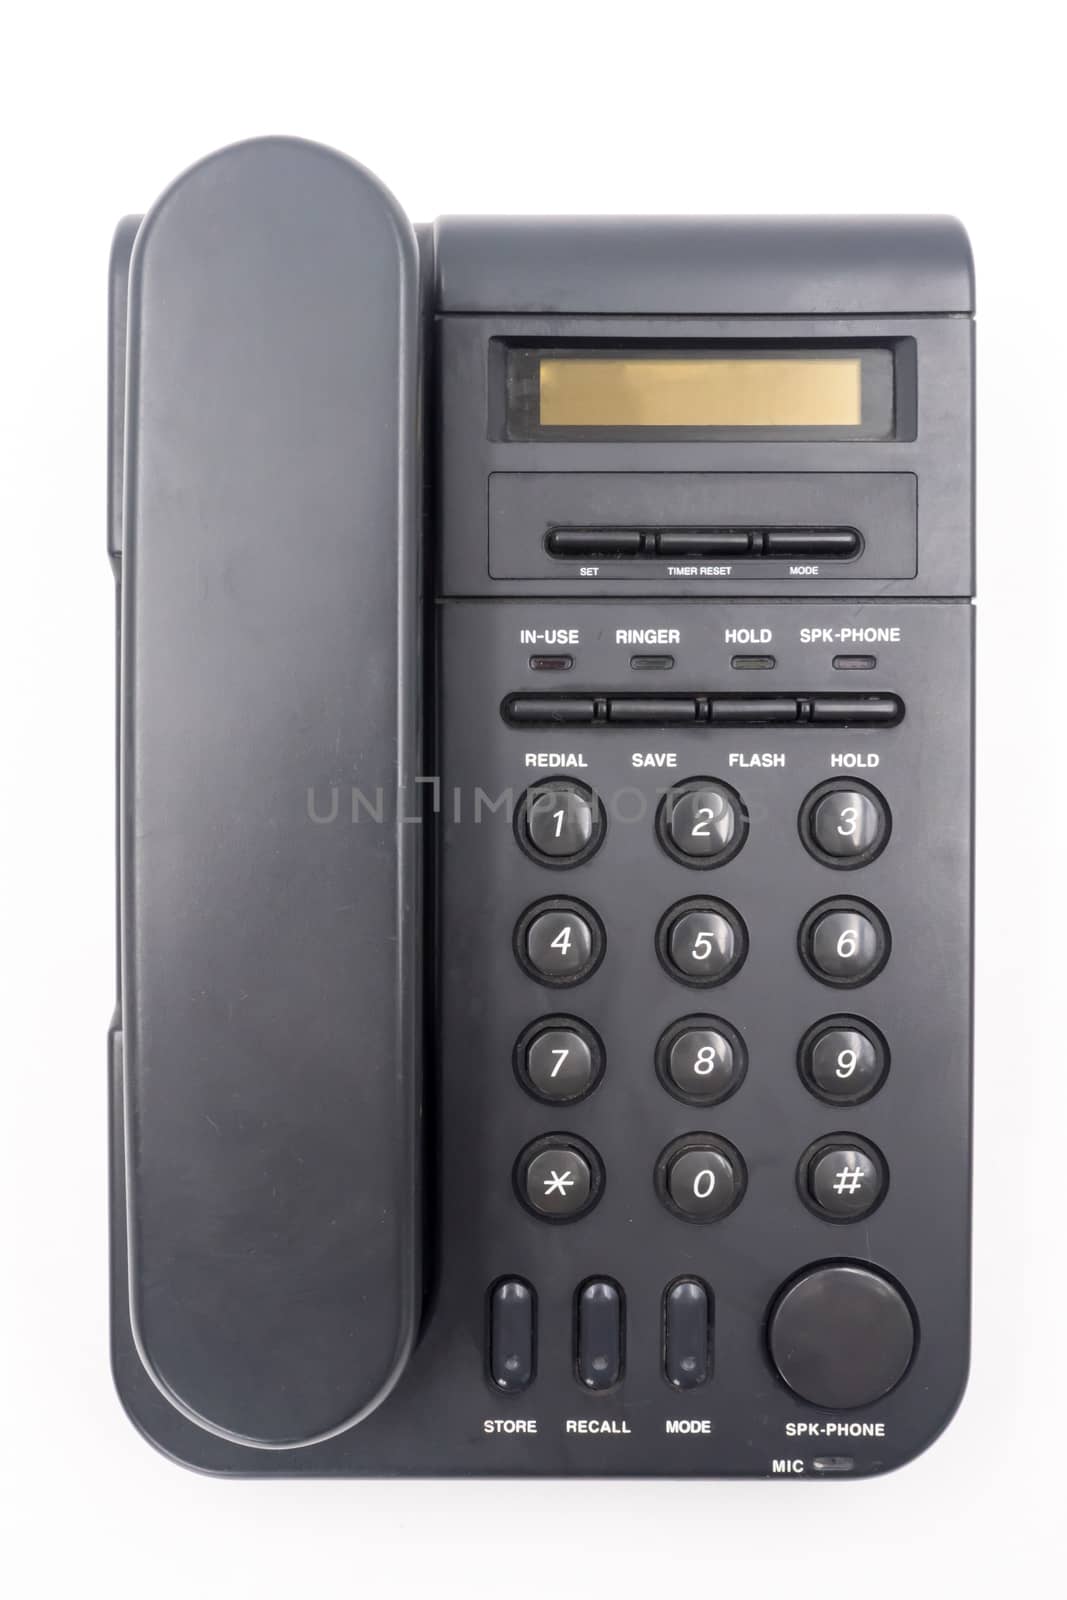 Black telephone on white background